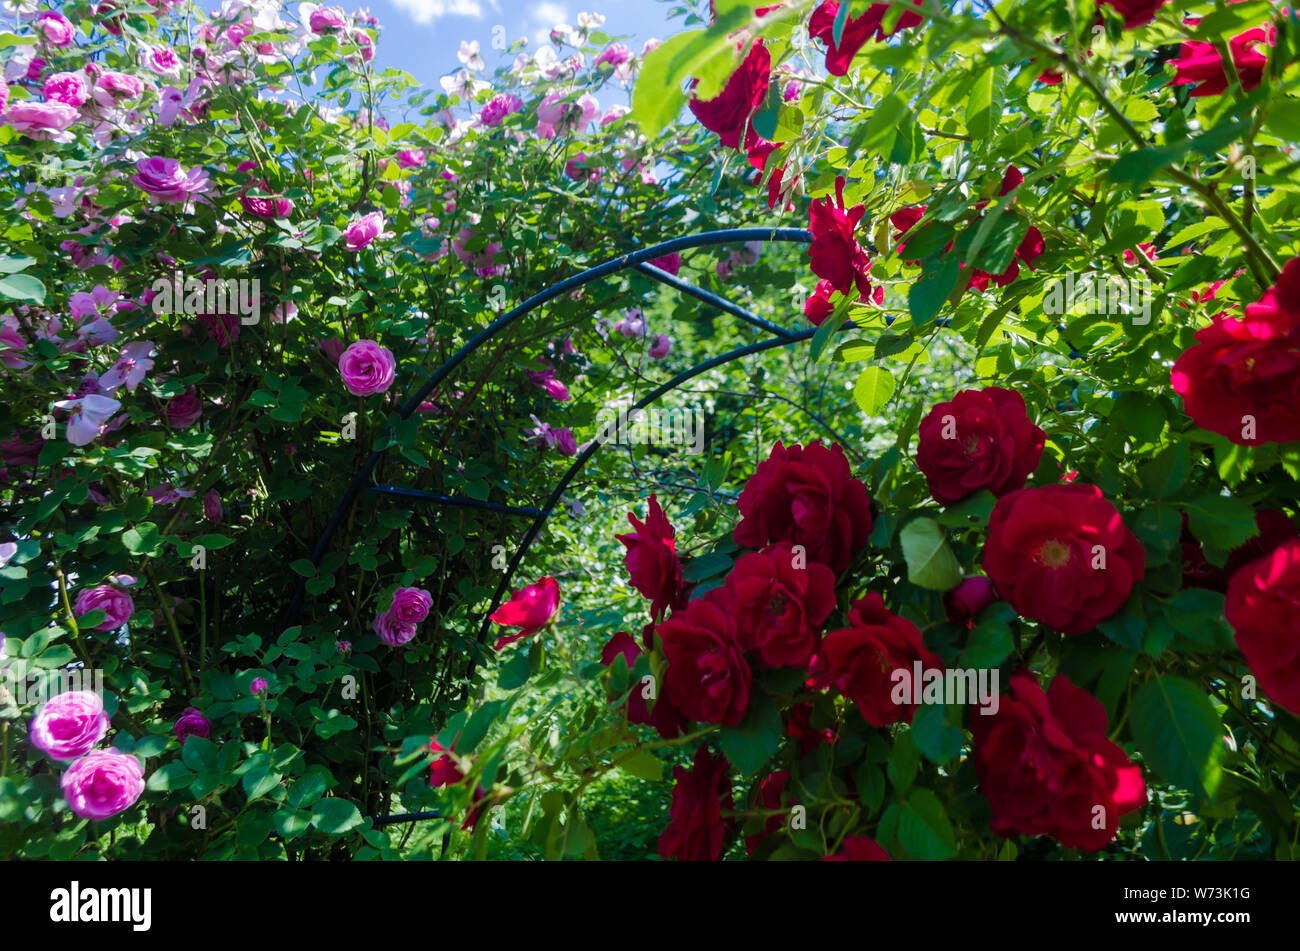 Bush flauschige rosa und rote Rosen in sonniger Tag. Romantische Röschen  auf grüne Blätter Hintergrund im Garten. In der Nähe von Büschen mit voller  Blüten auf Sträuchern b Stockfotografie - Alamy